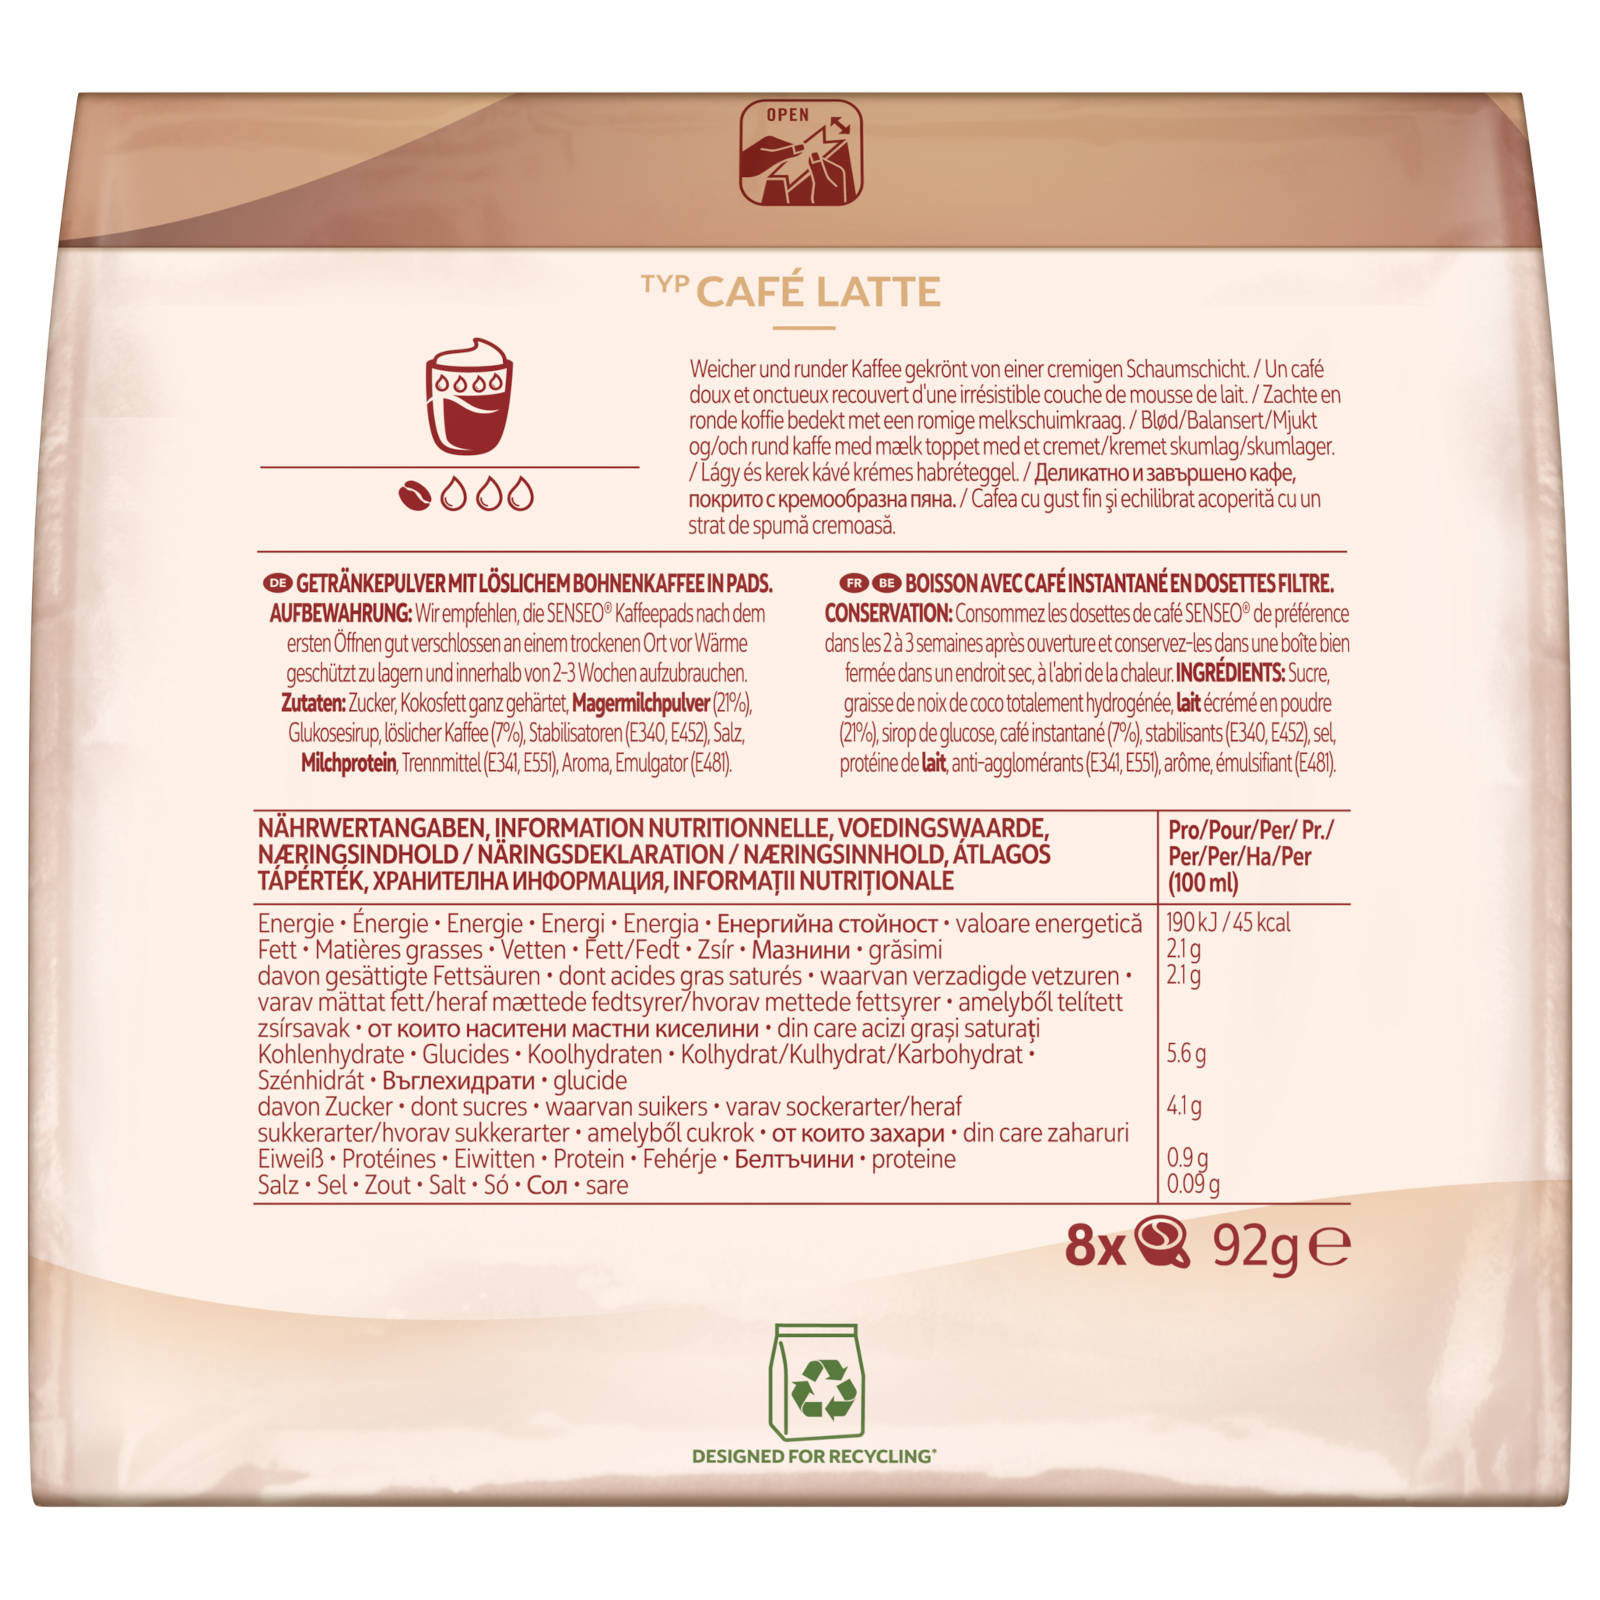 SENSEO Typ Café x 8 Kaffeepads (Senseo 10 Latte Getränke Padmaschine)